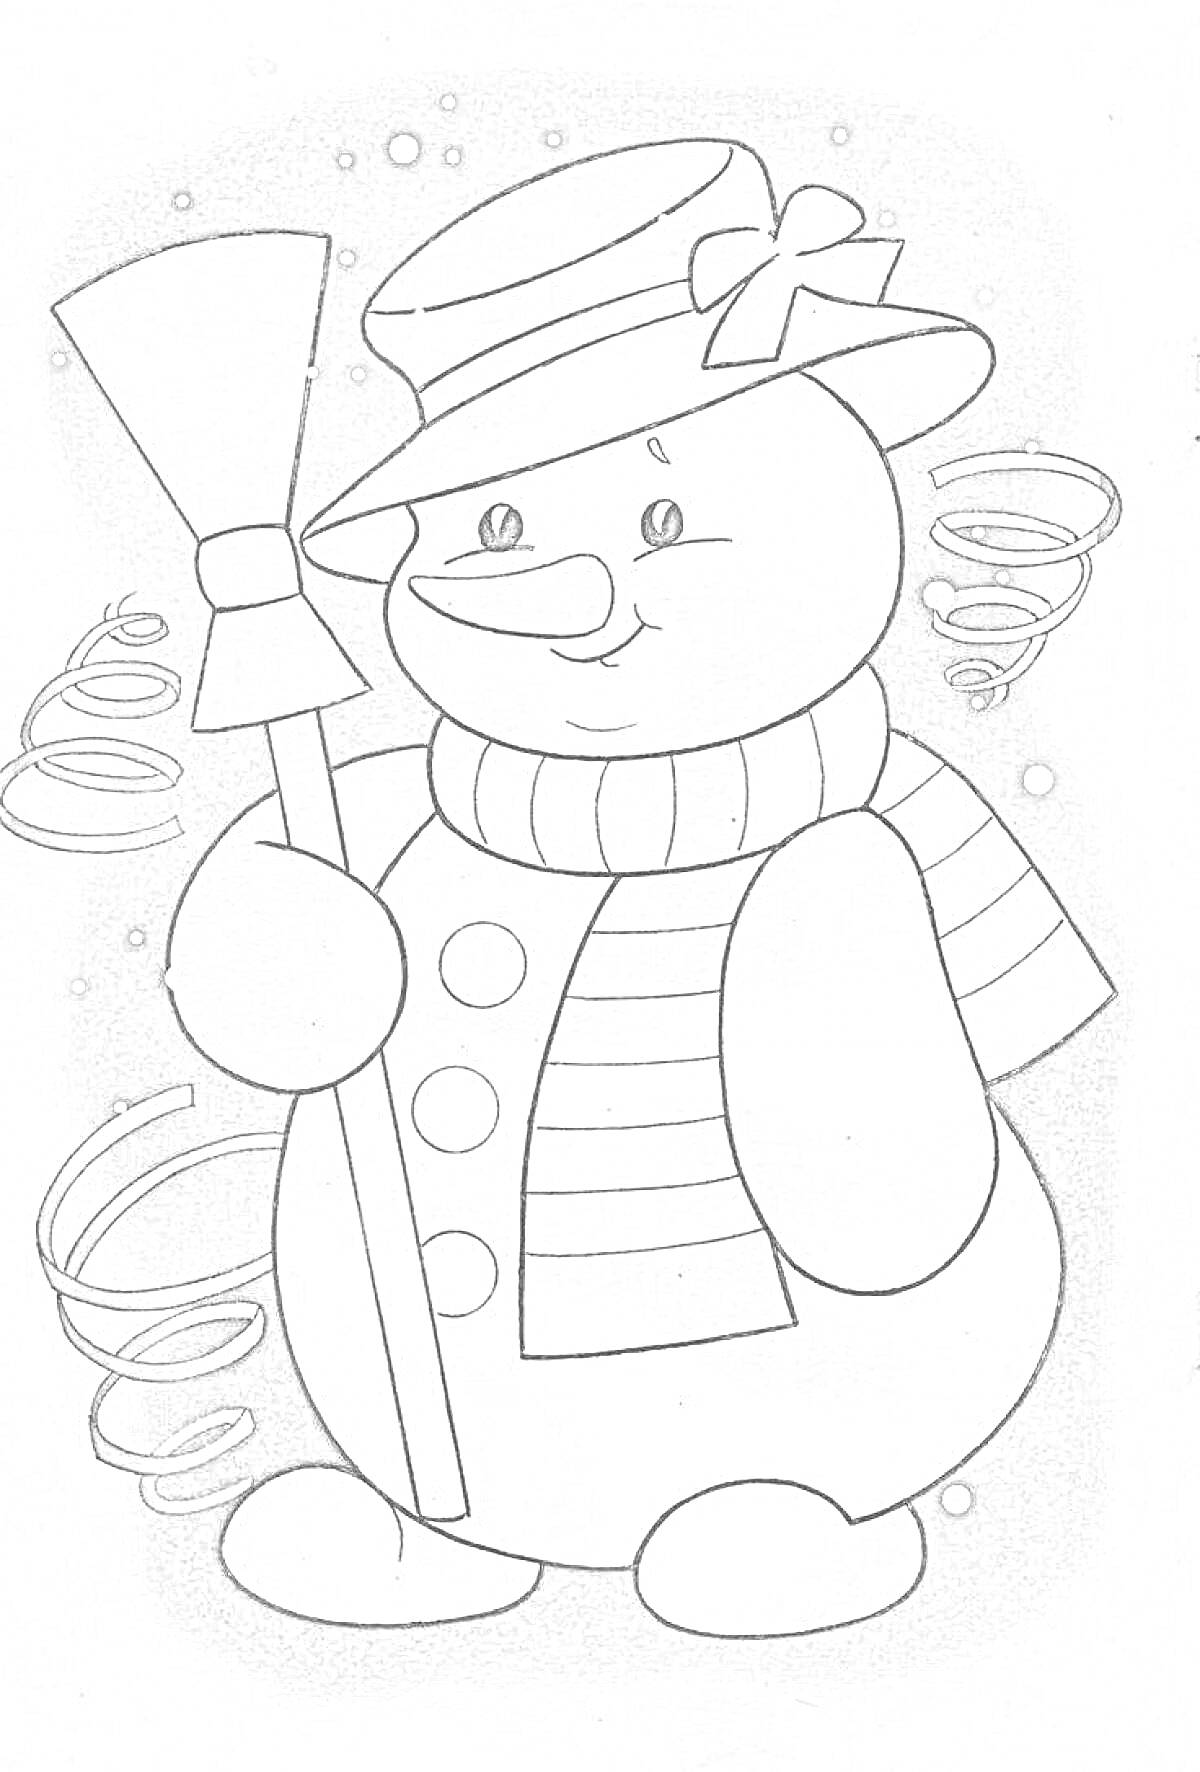 Раскраска снеговик с метлой, в шляпе и шарфе на фоне снежинок и завитков